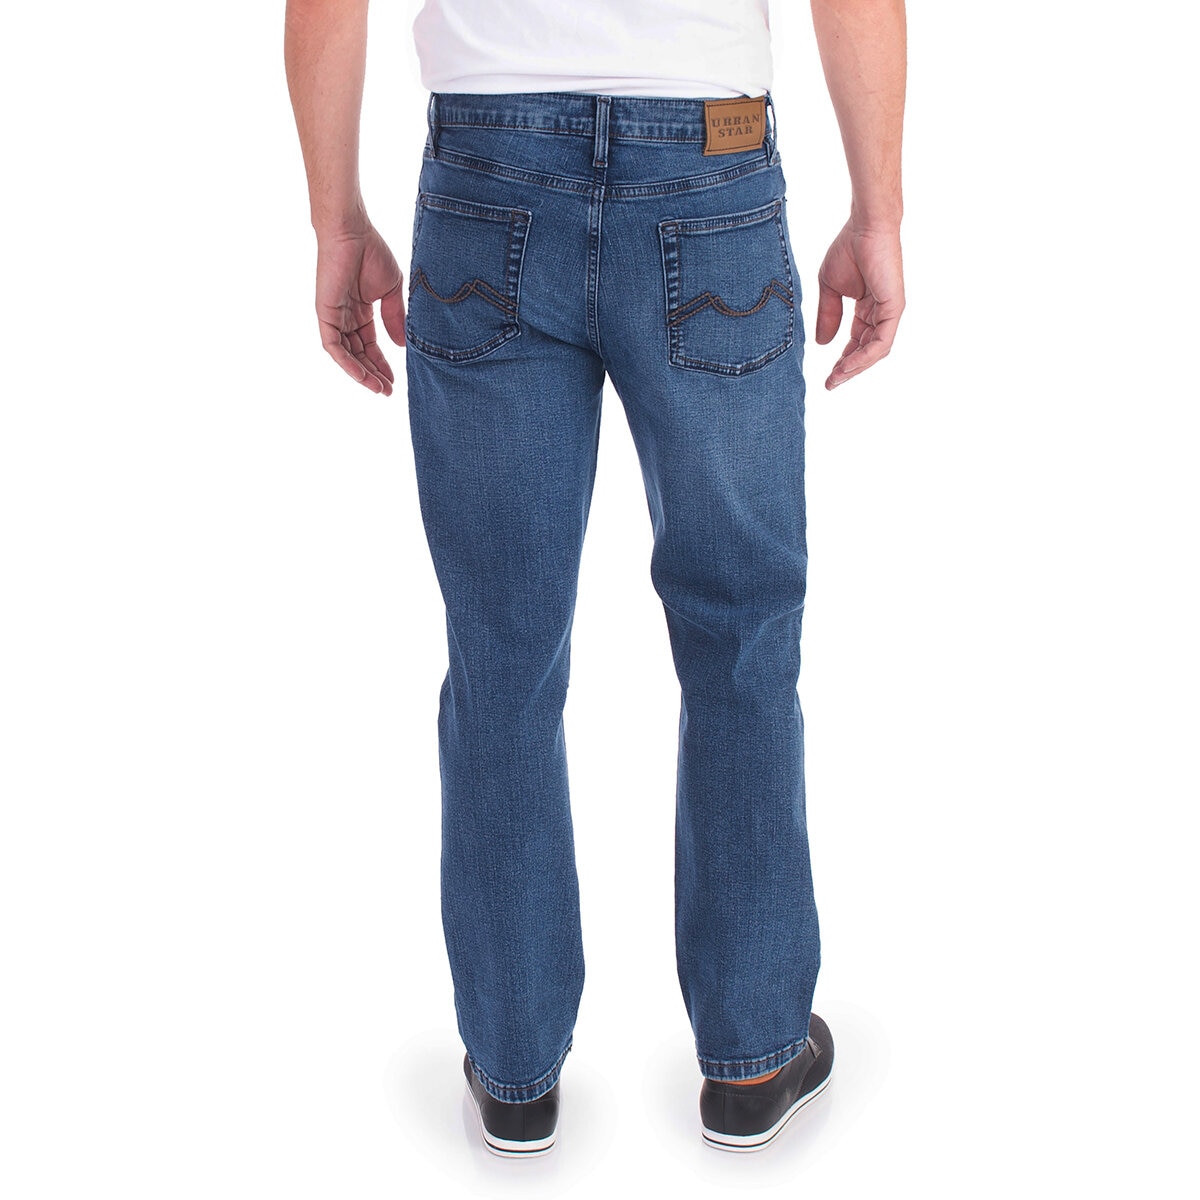 Urban Star Jeans para Caballero Azul Medio 32x34